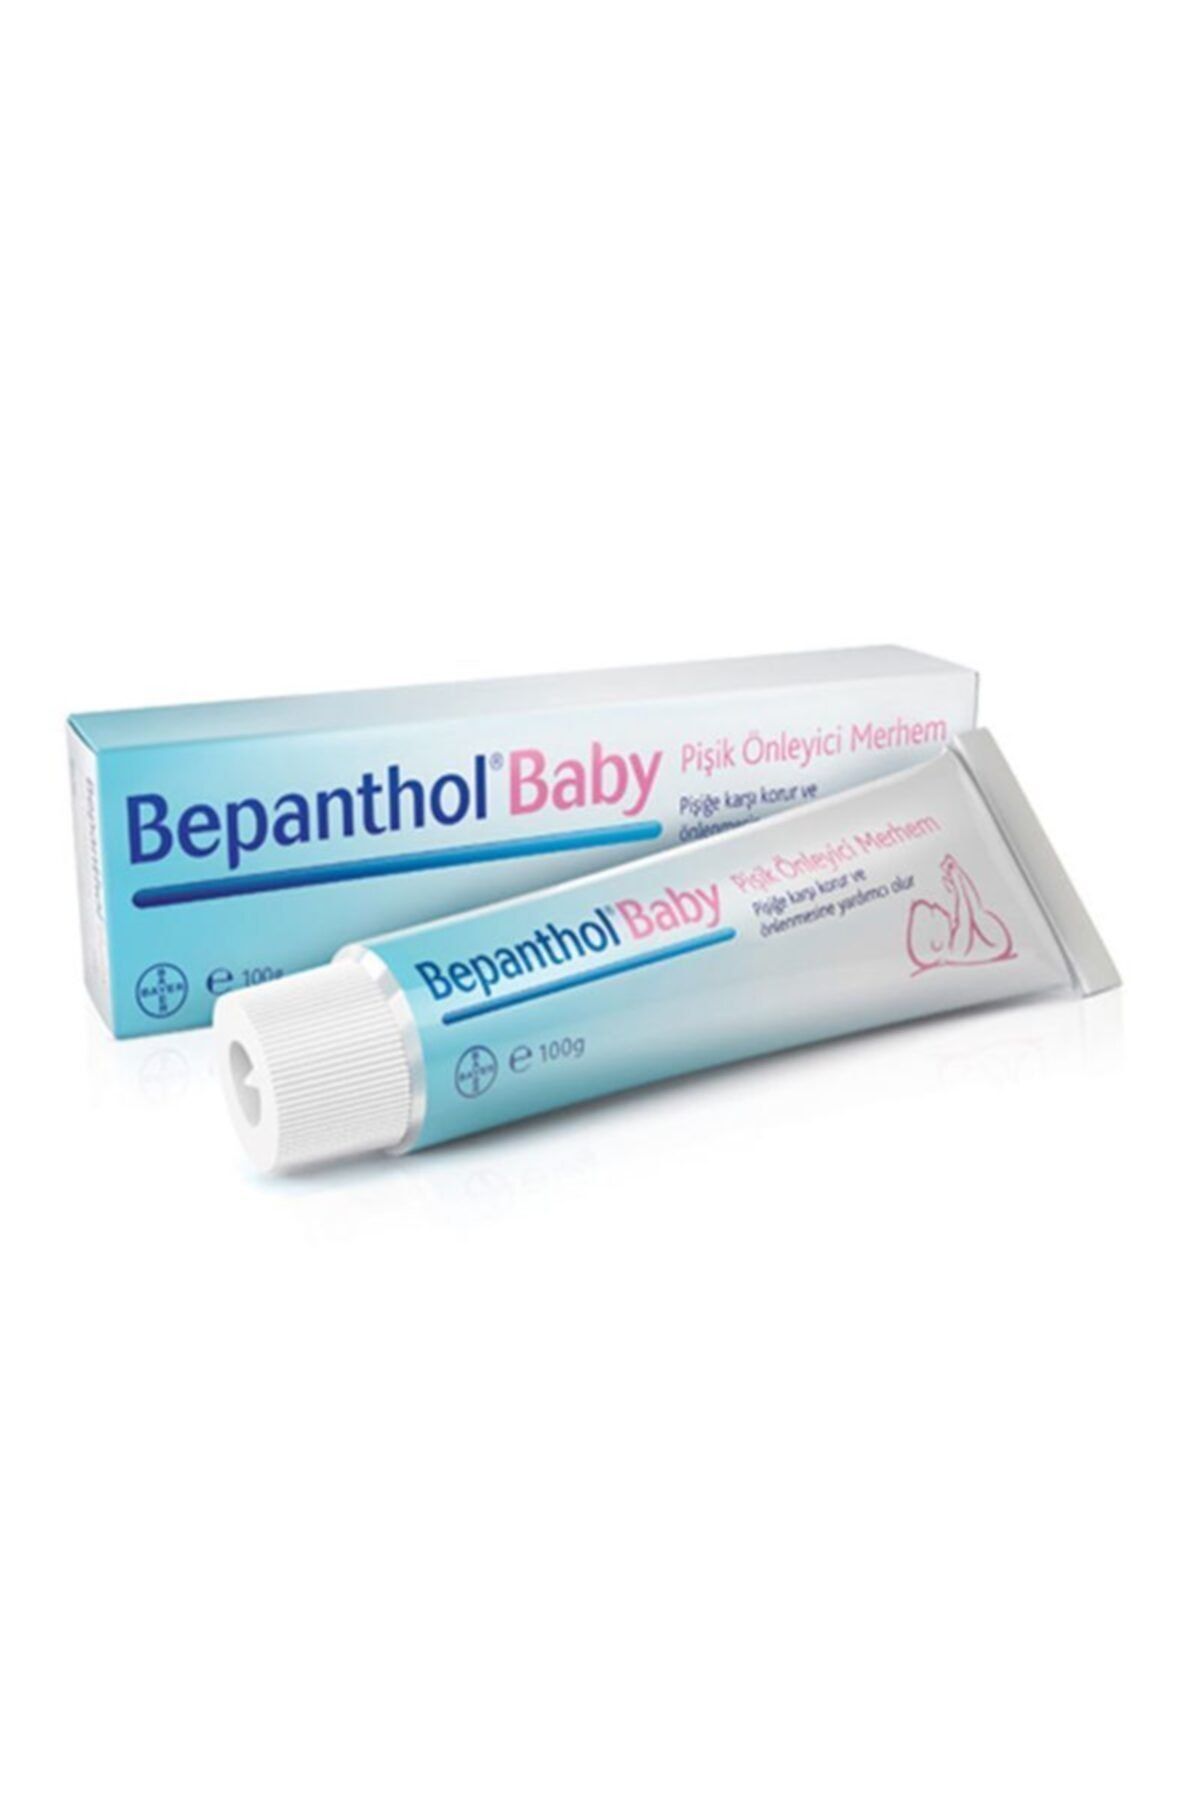 Bayer Bepanthol Baby Pişik Önleyici Merhem 100 gr